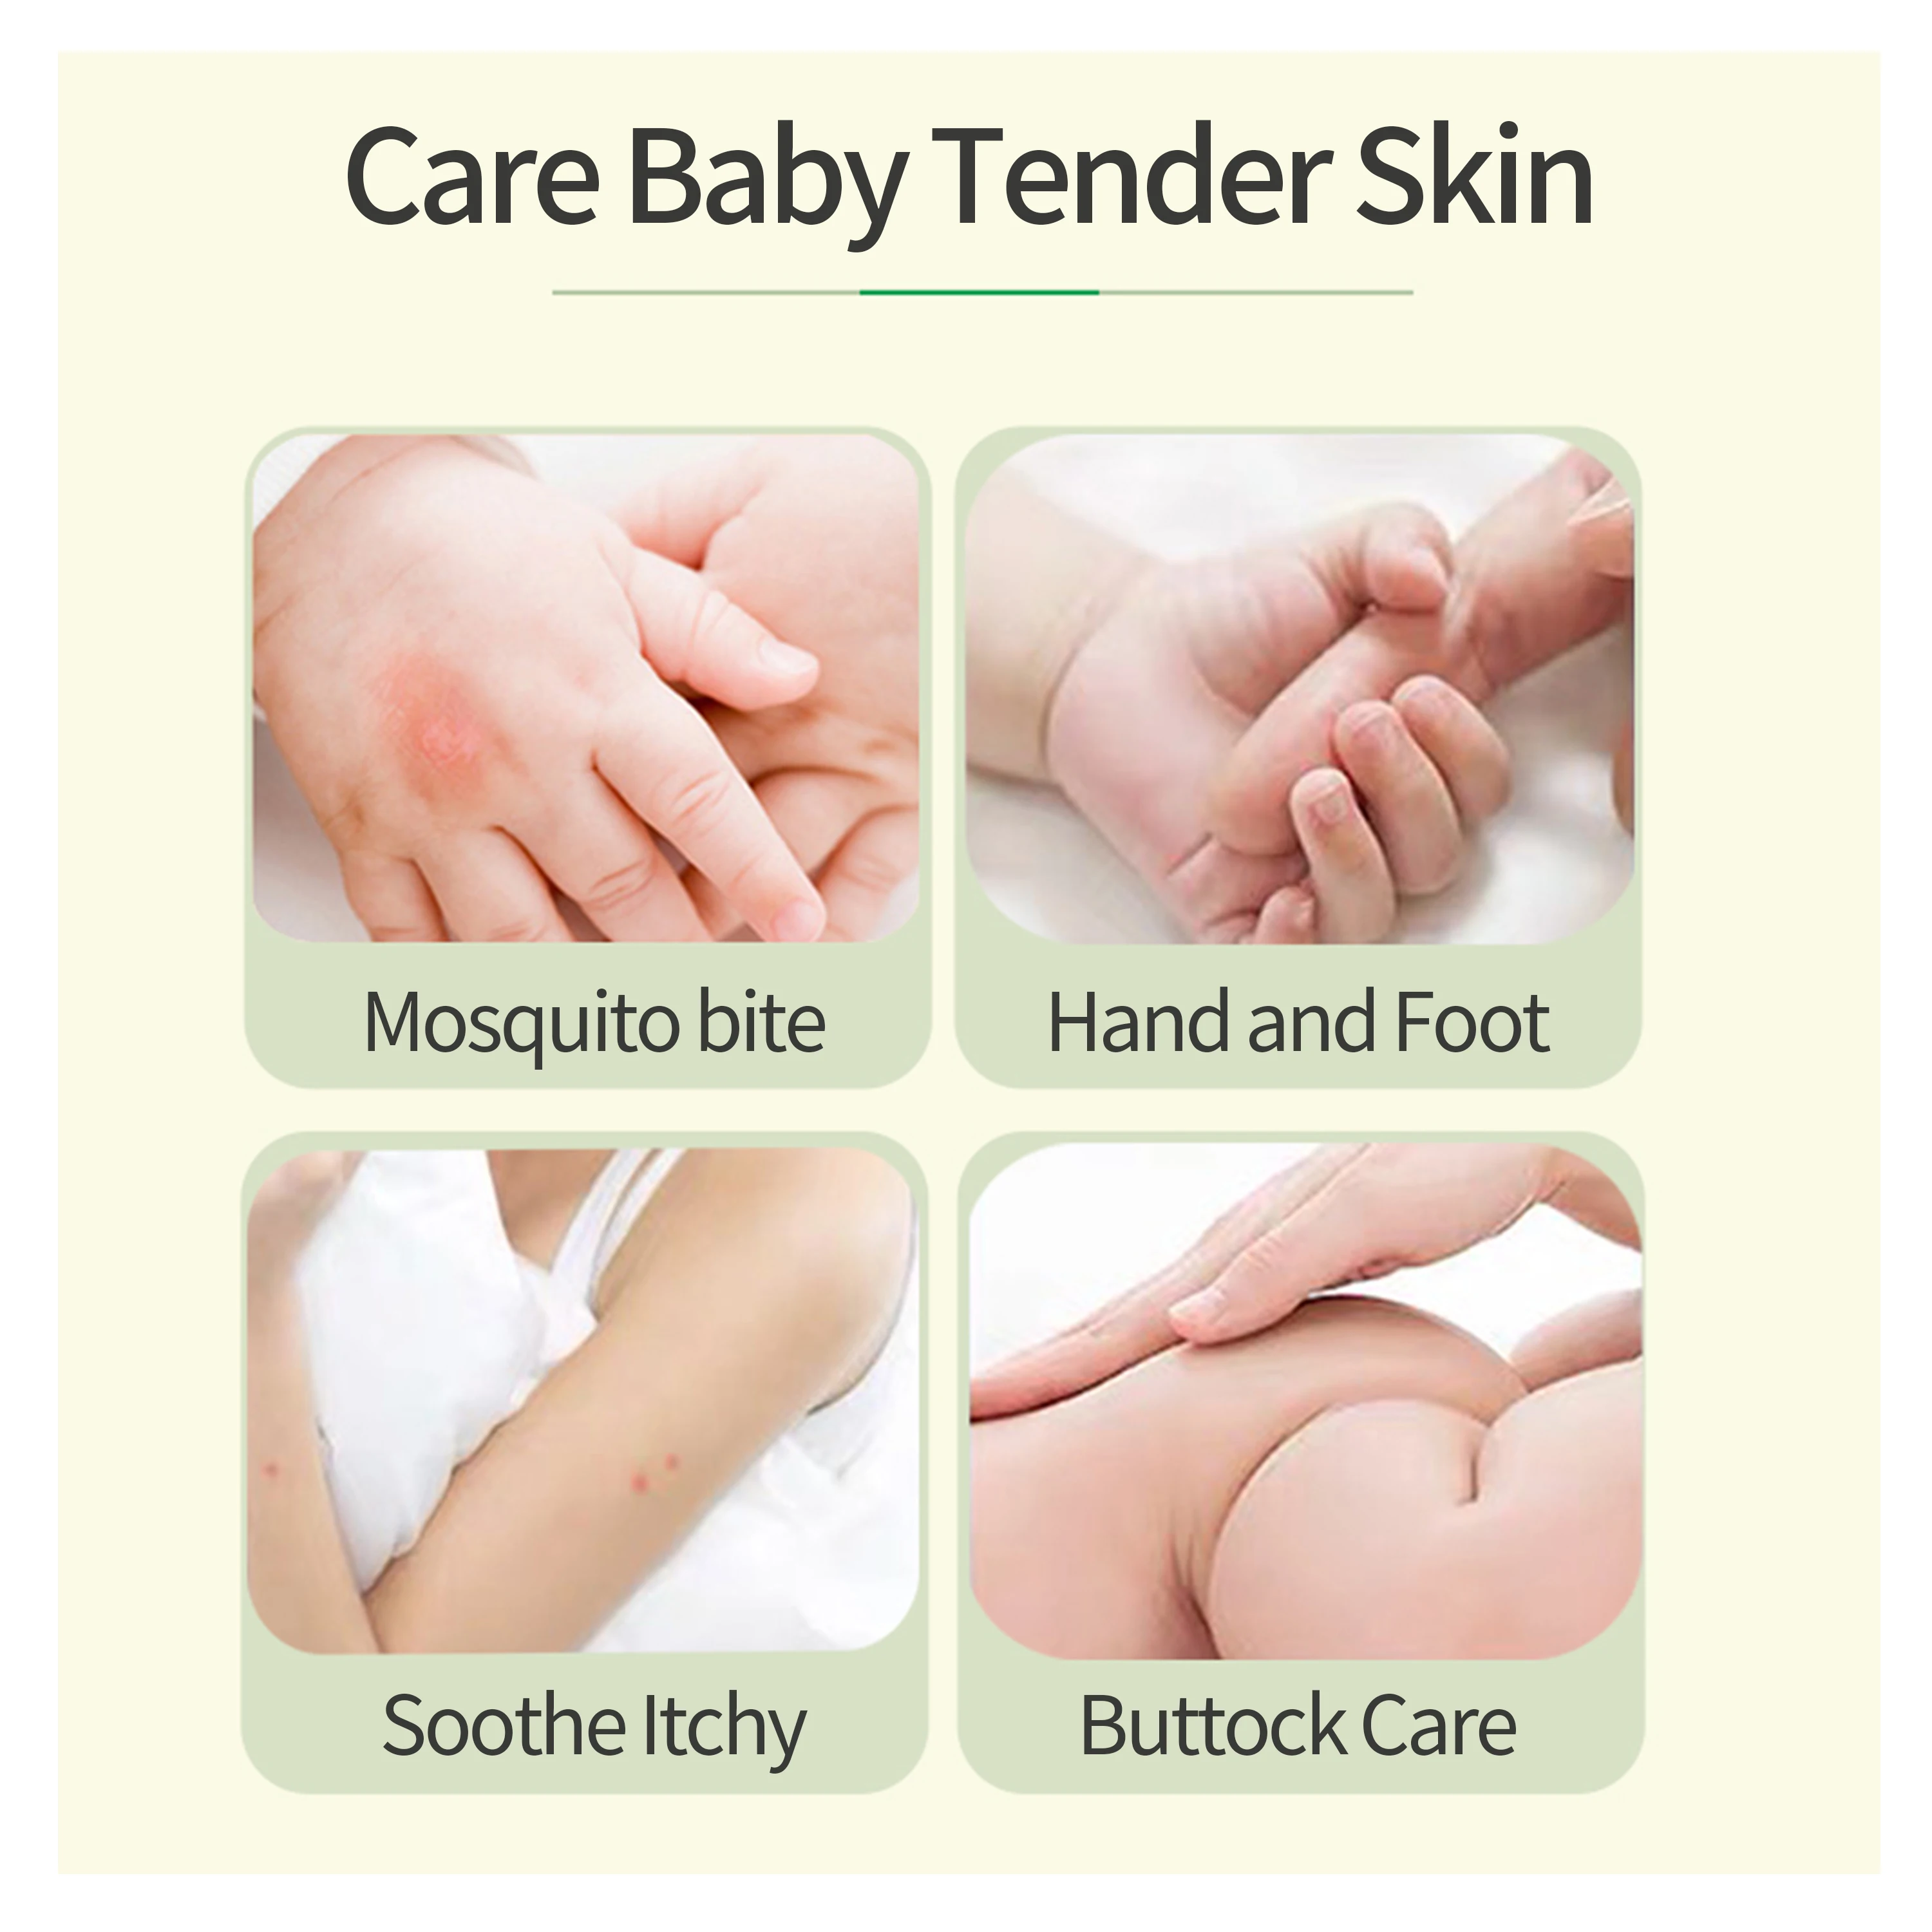 OEM ODM мазь мятной перечной мяты восстанавливает кожу барьер в срочном успокоении зуда и покраснения для младенцев и беременных мам